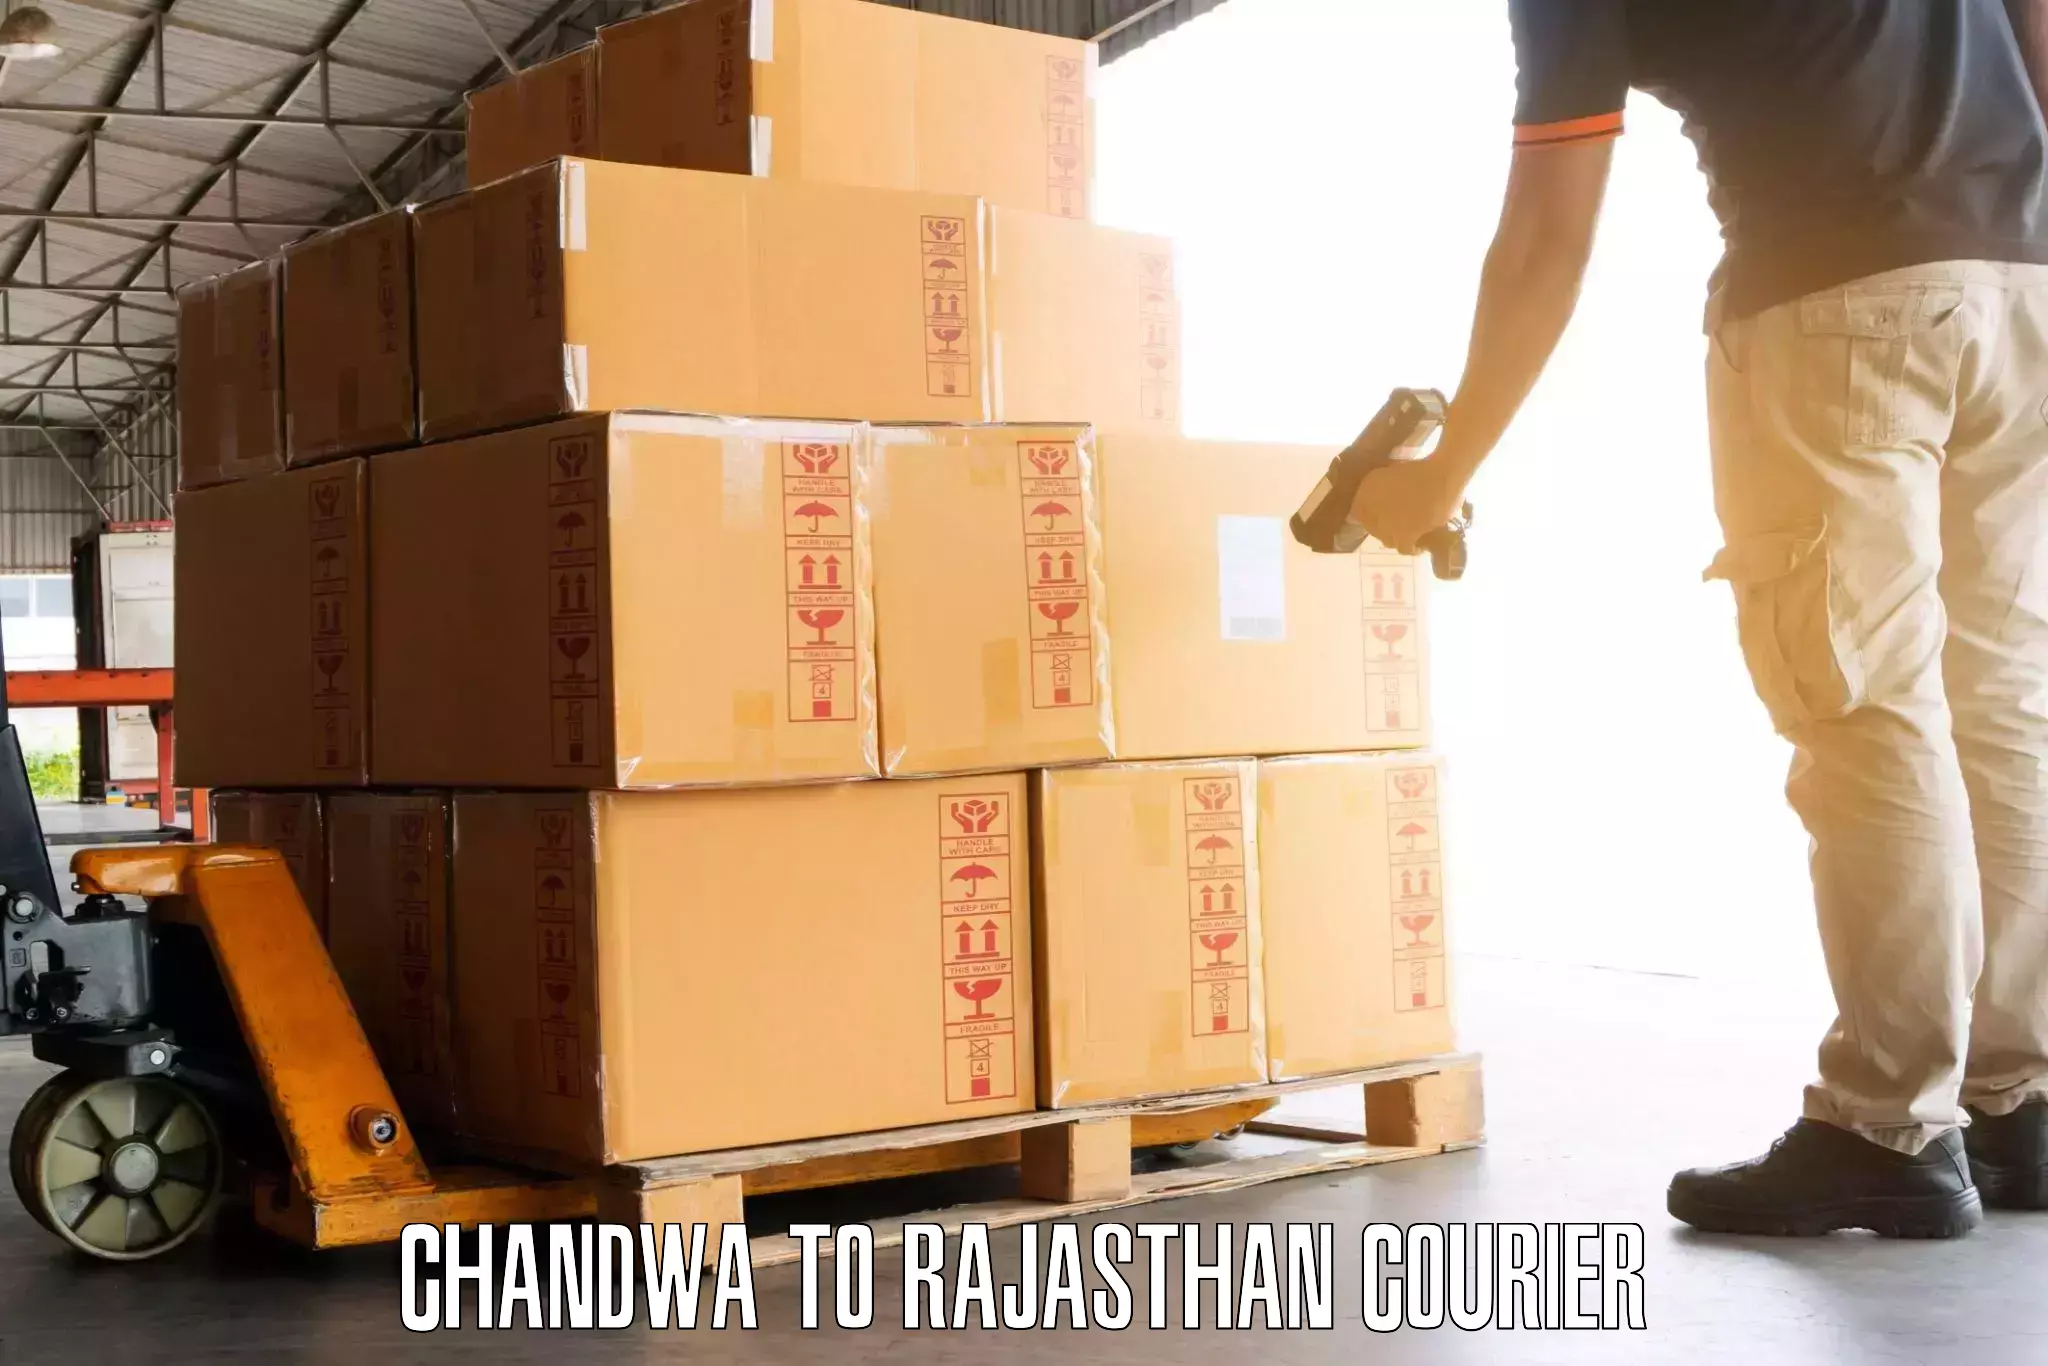 Door-to-door baggage service Chandwa to Jojawar